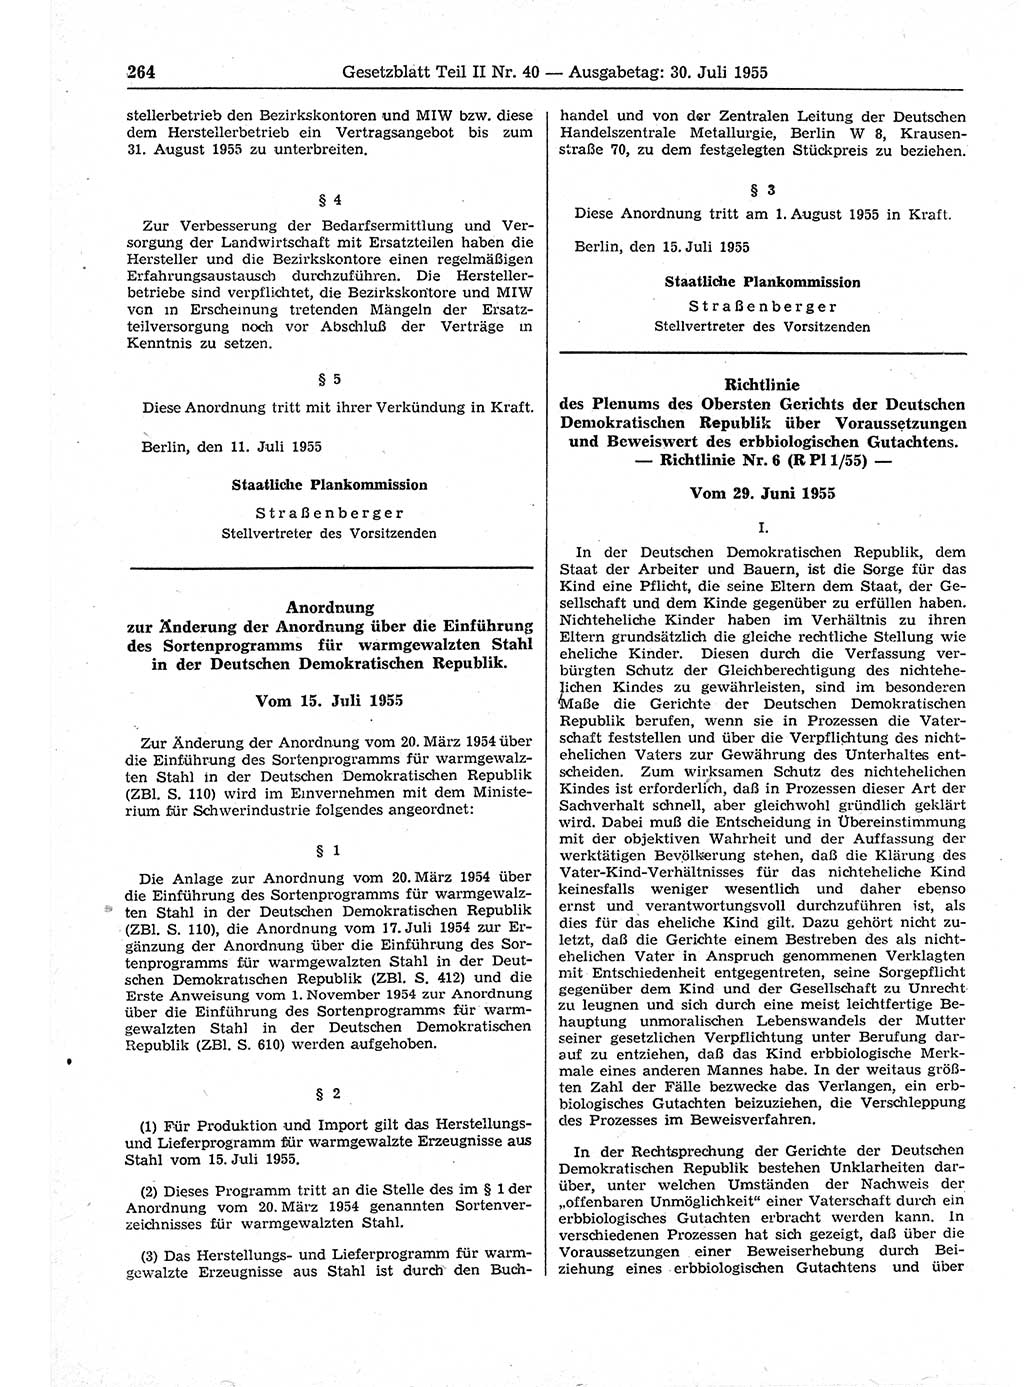 Gesetzblatt (GBl.) der Deutschen Demokratischen Republik (DDR) Teil ⅠⅠ 1955, Seite 264 (GBl. DDR ⅠⅠ 1955, S. 264)